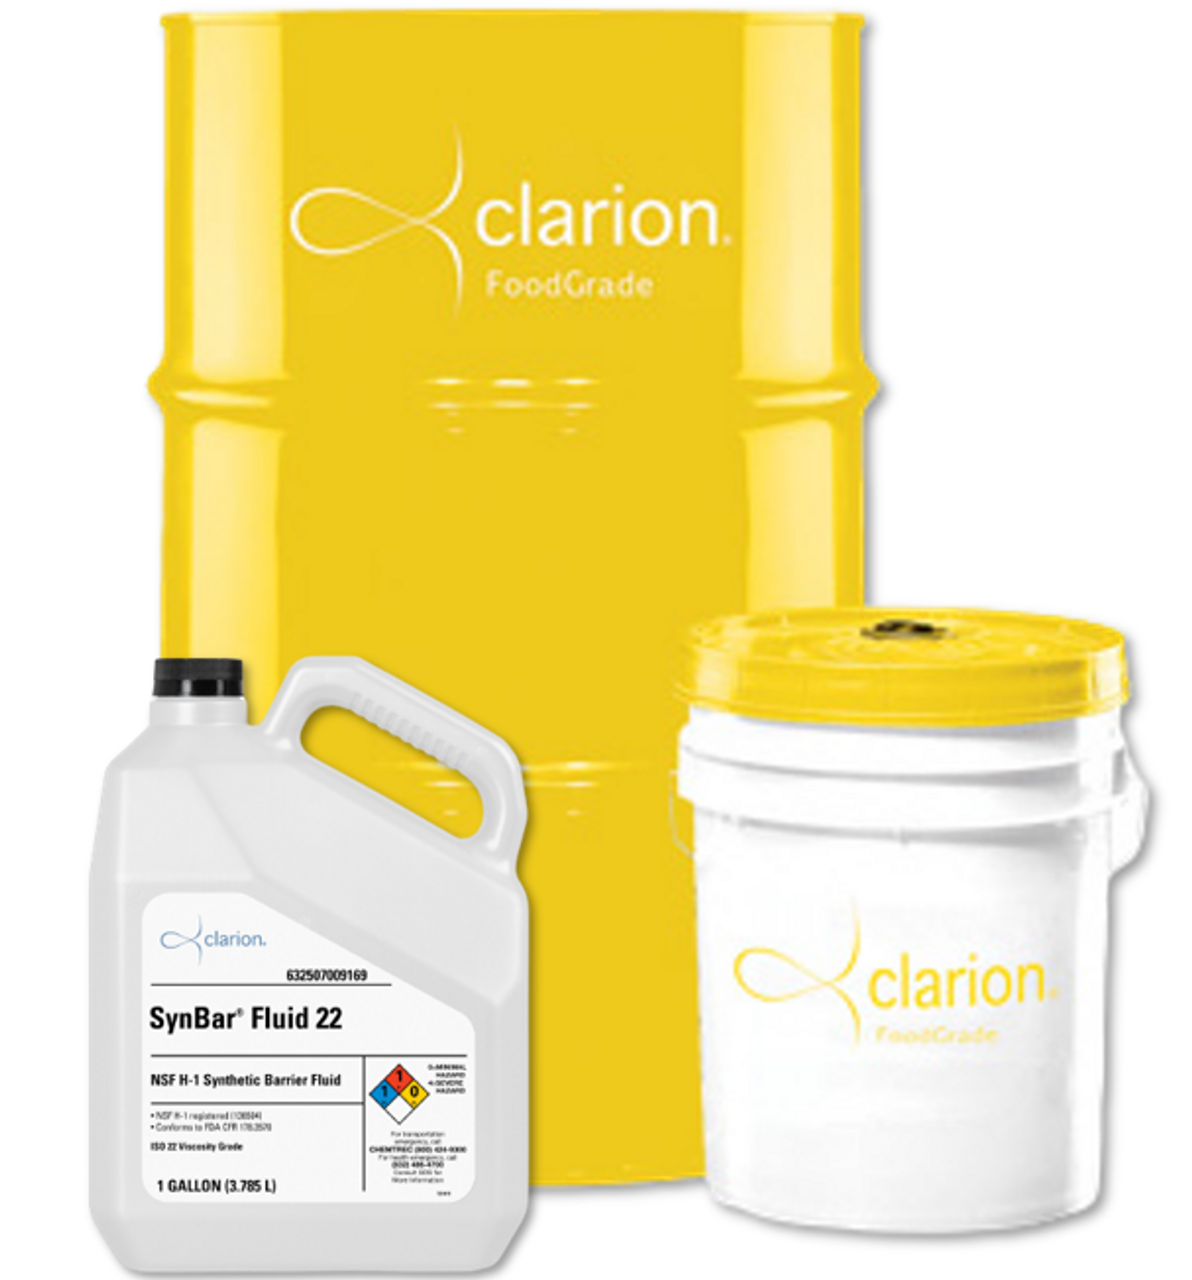 Clarion SynBar Fluid 22